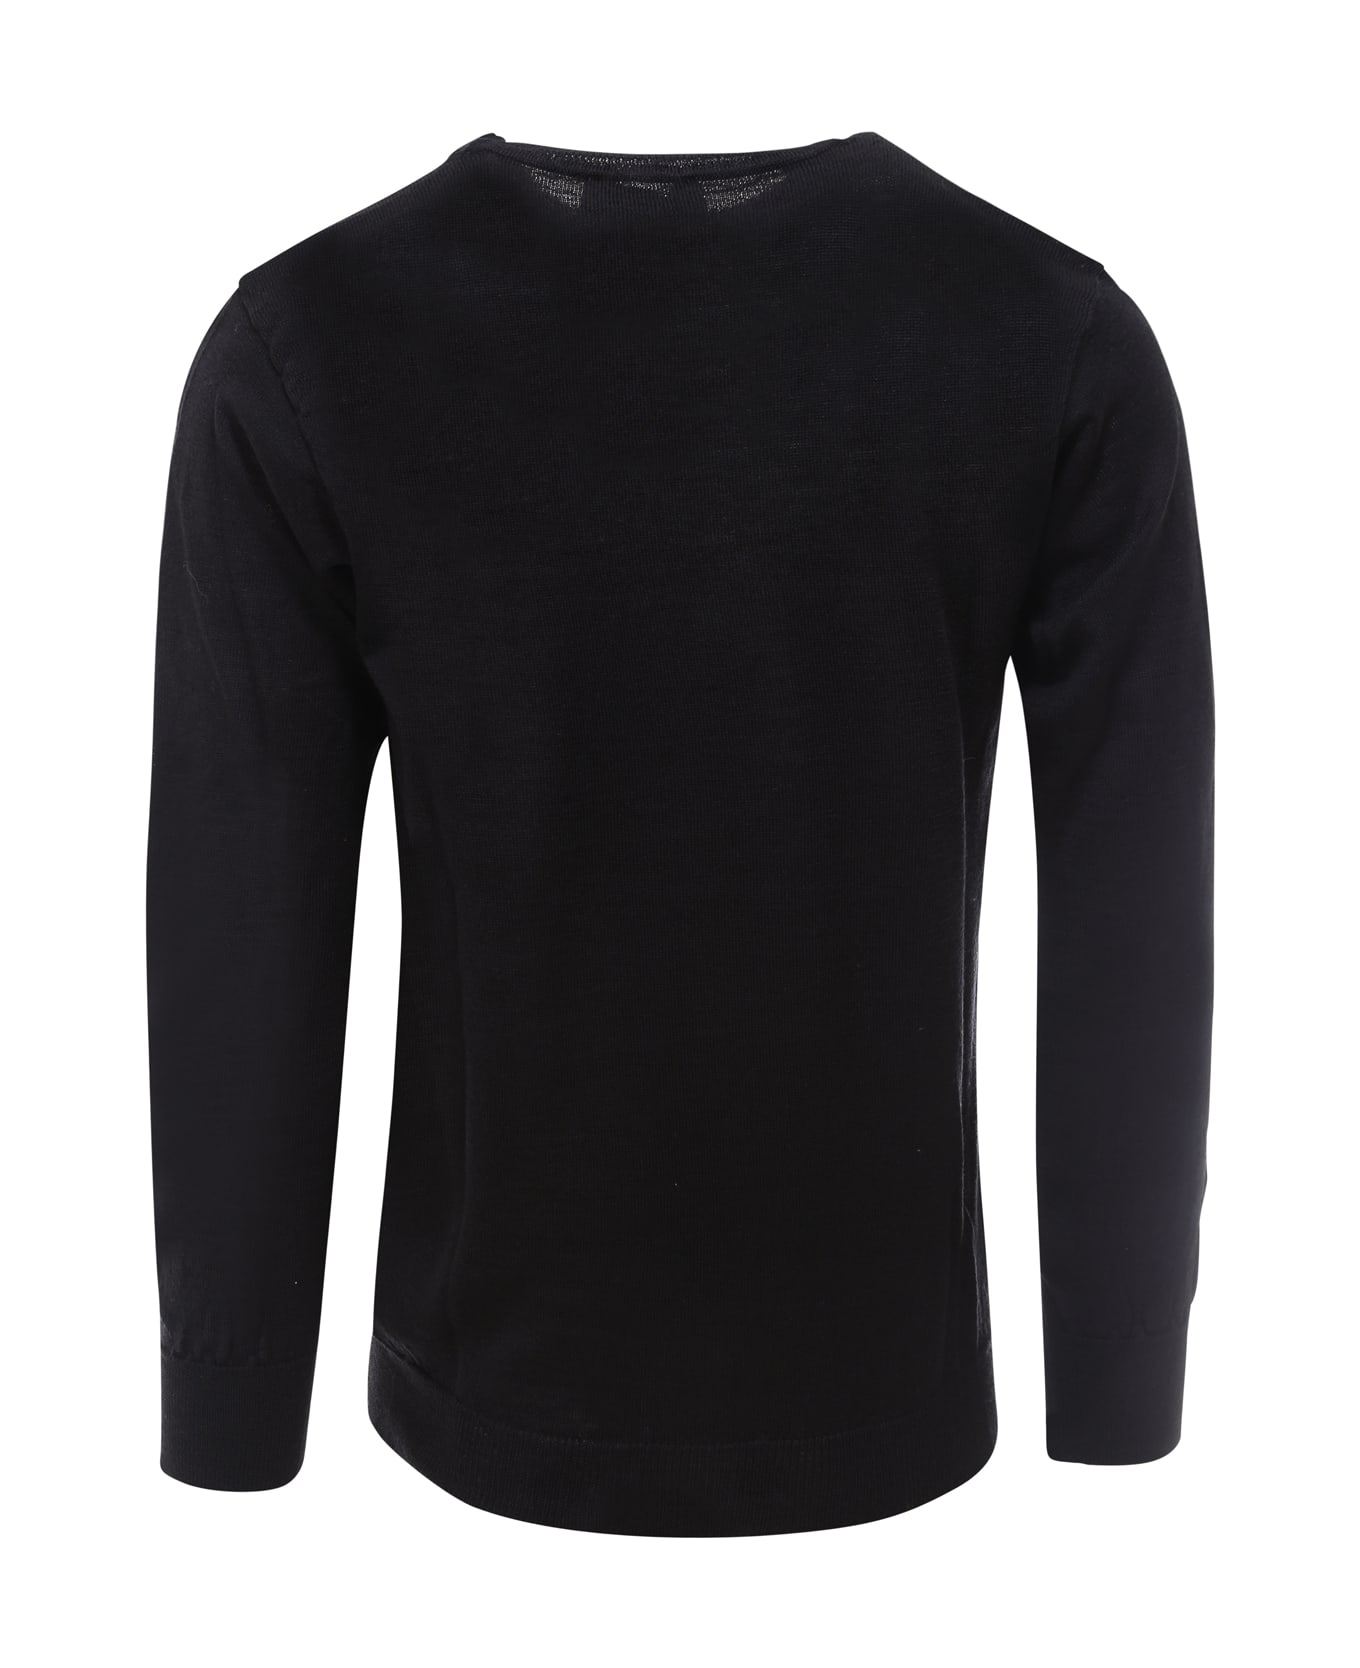 Maison Flaneur Sweater - Black ニットウェア